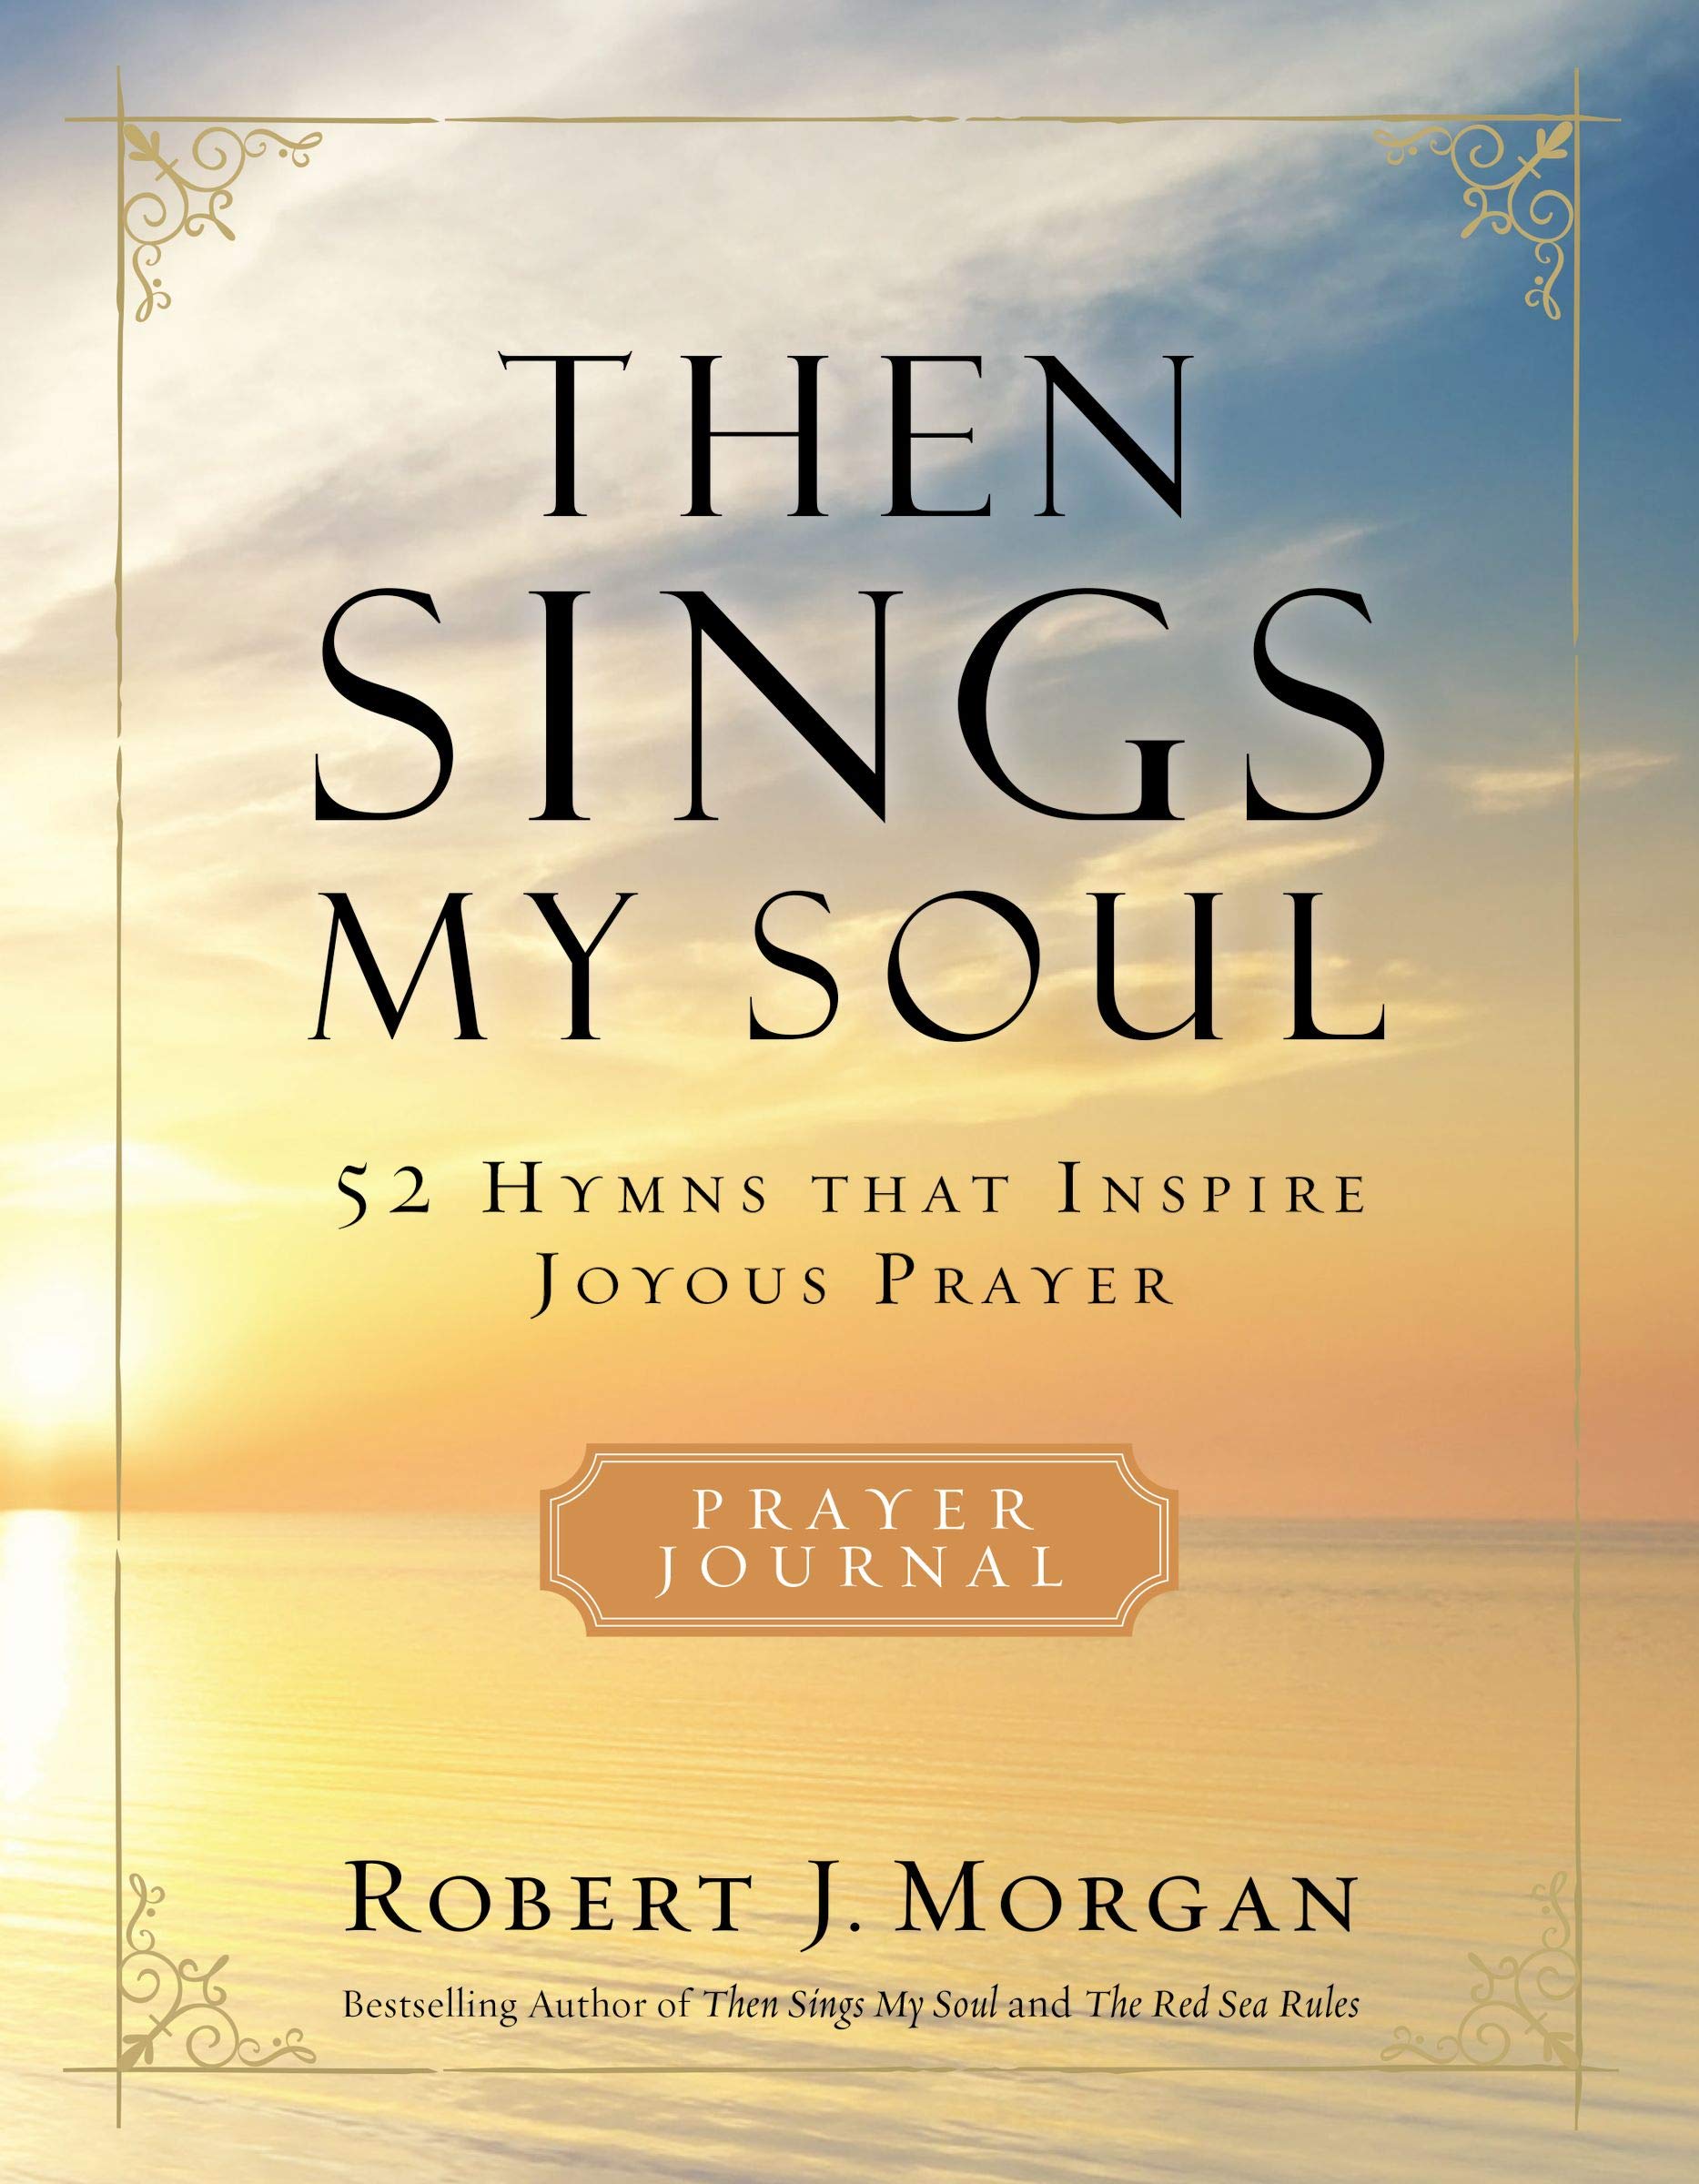 Then Sings My Soul : 52 Hymns that Inspire Joyous Prayer, A Prayer Journal by Robert J. Morgan